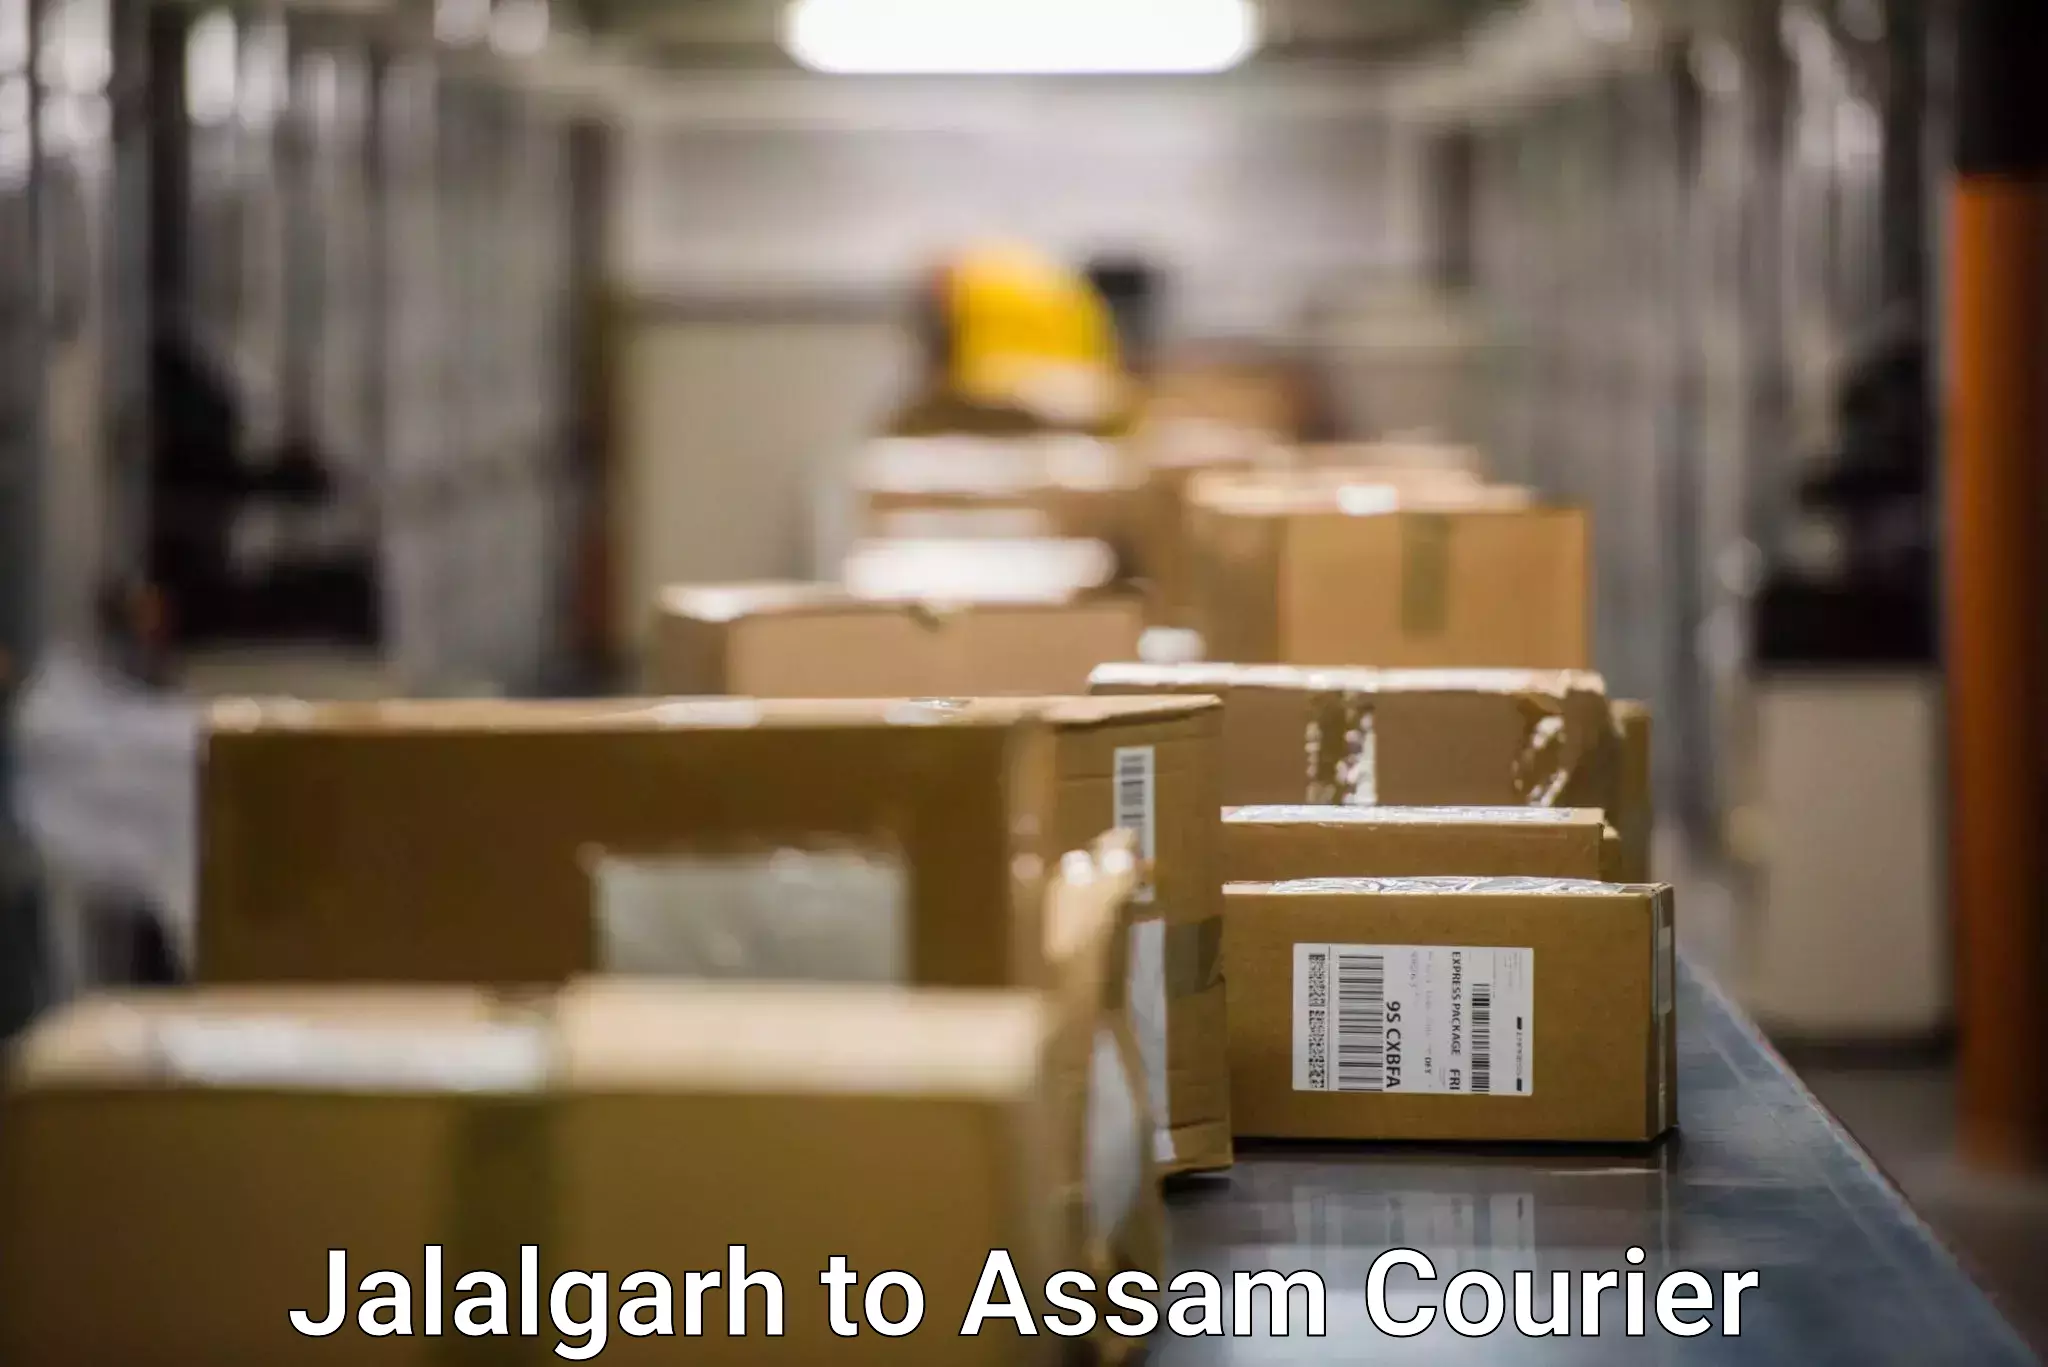 24/7 courier service Jalalgarh to Amoni